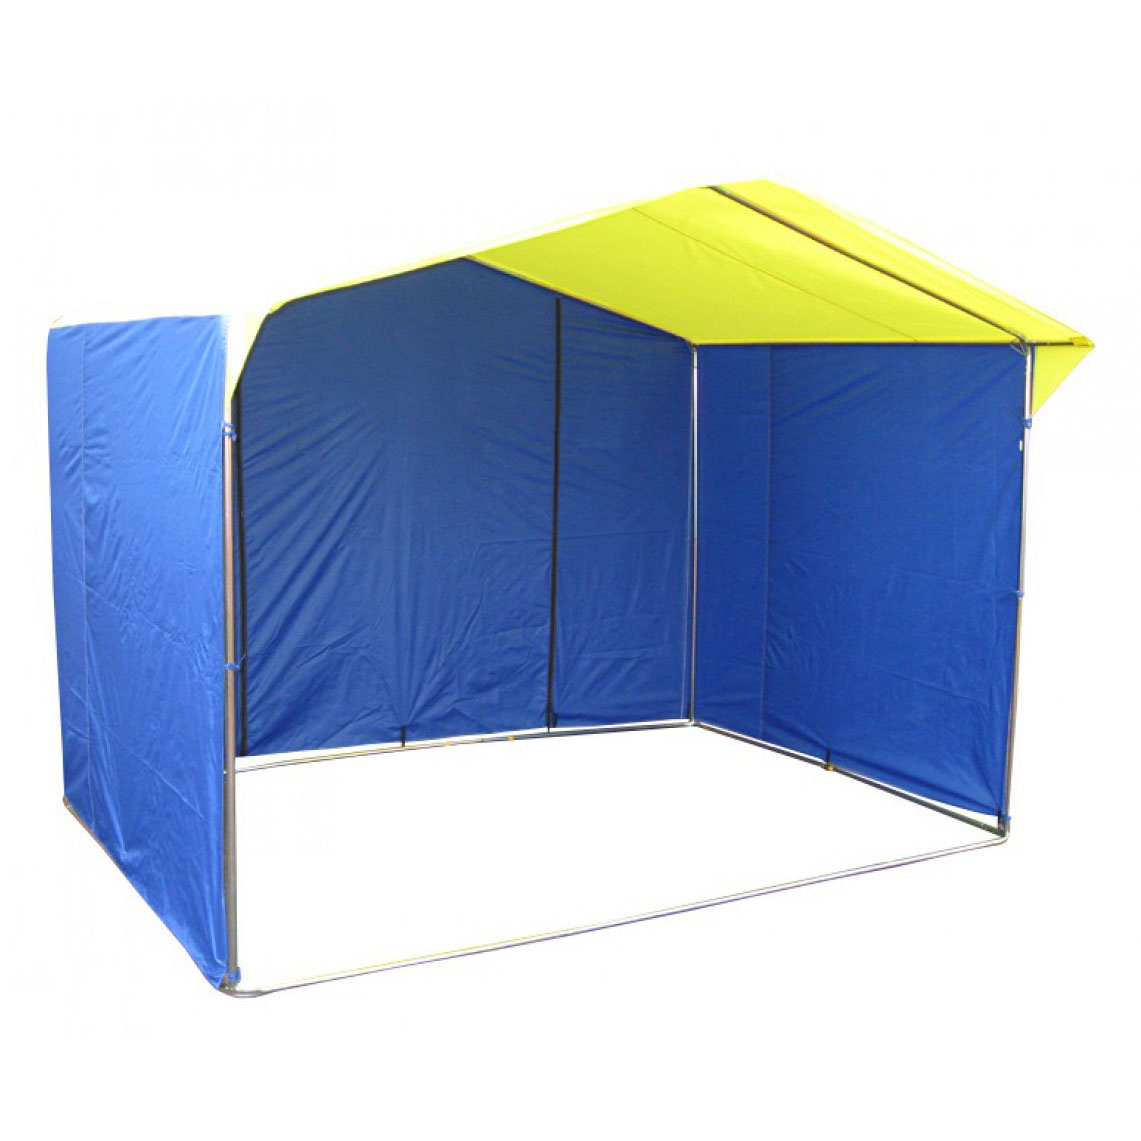 фото Палатка митек домик 2.5х1.9 желто-синий